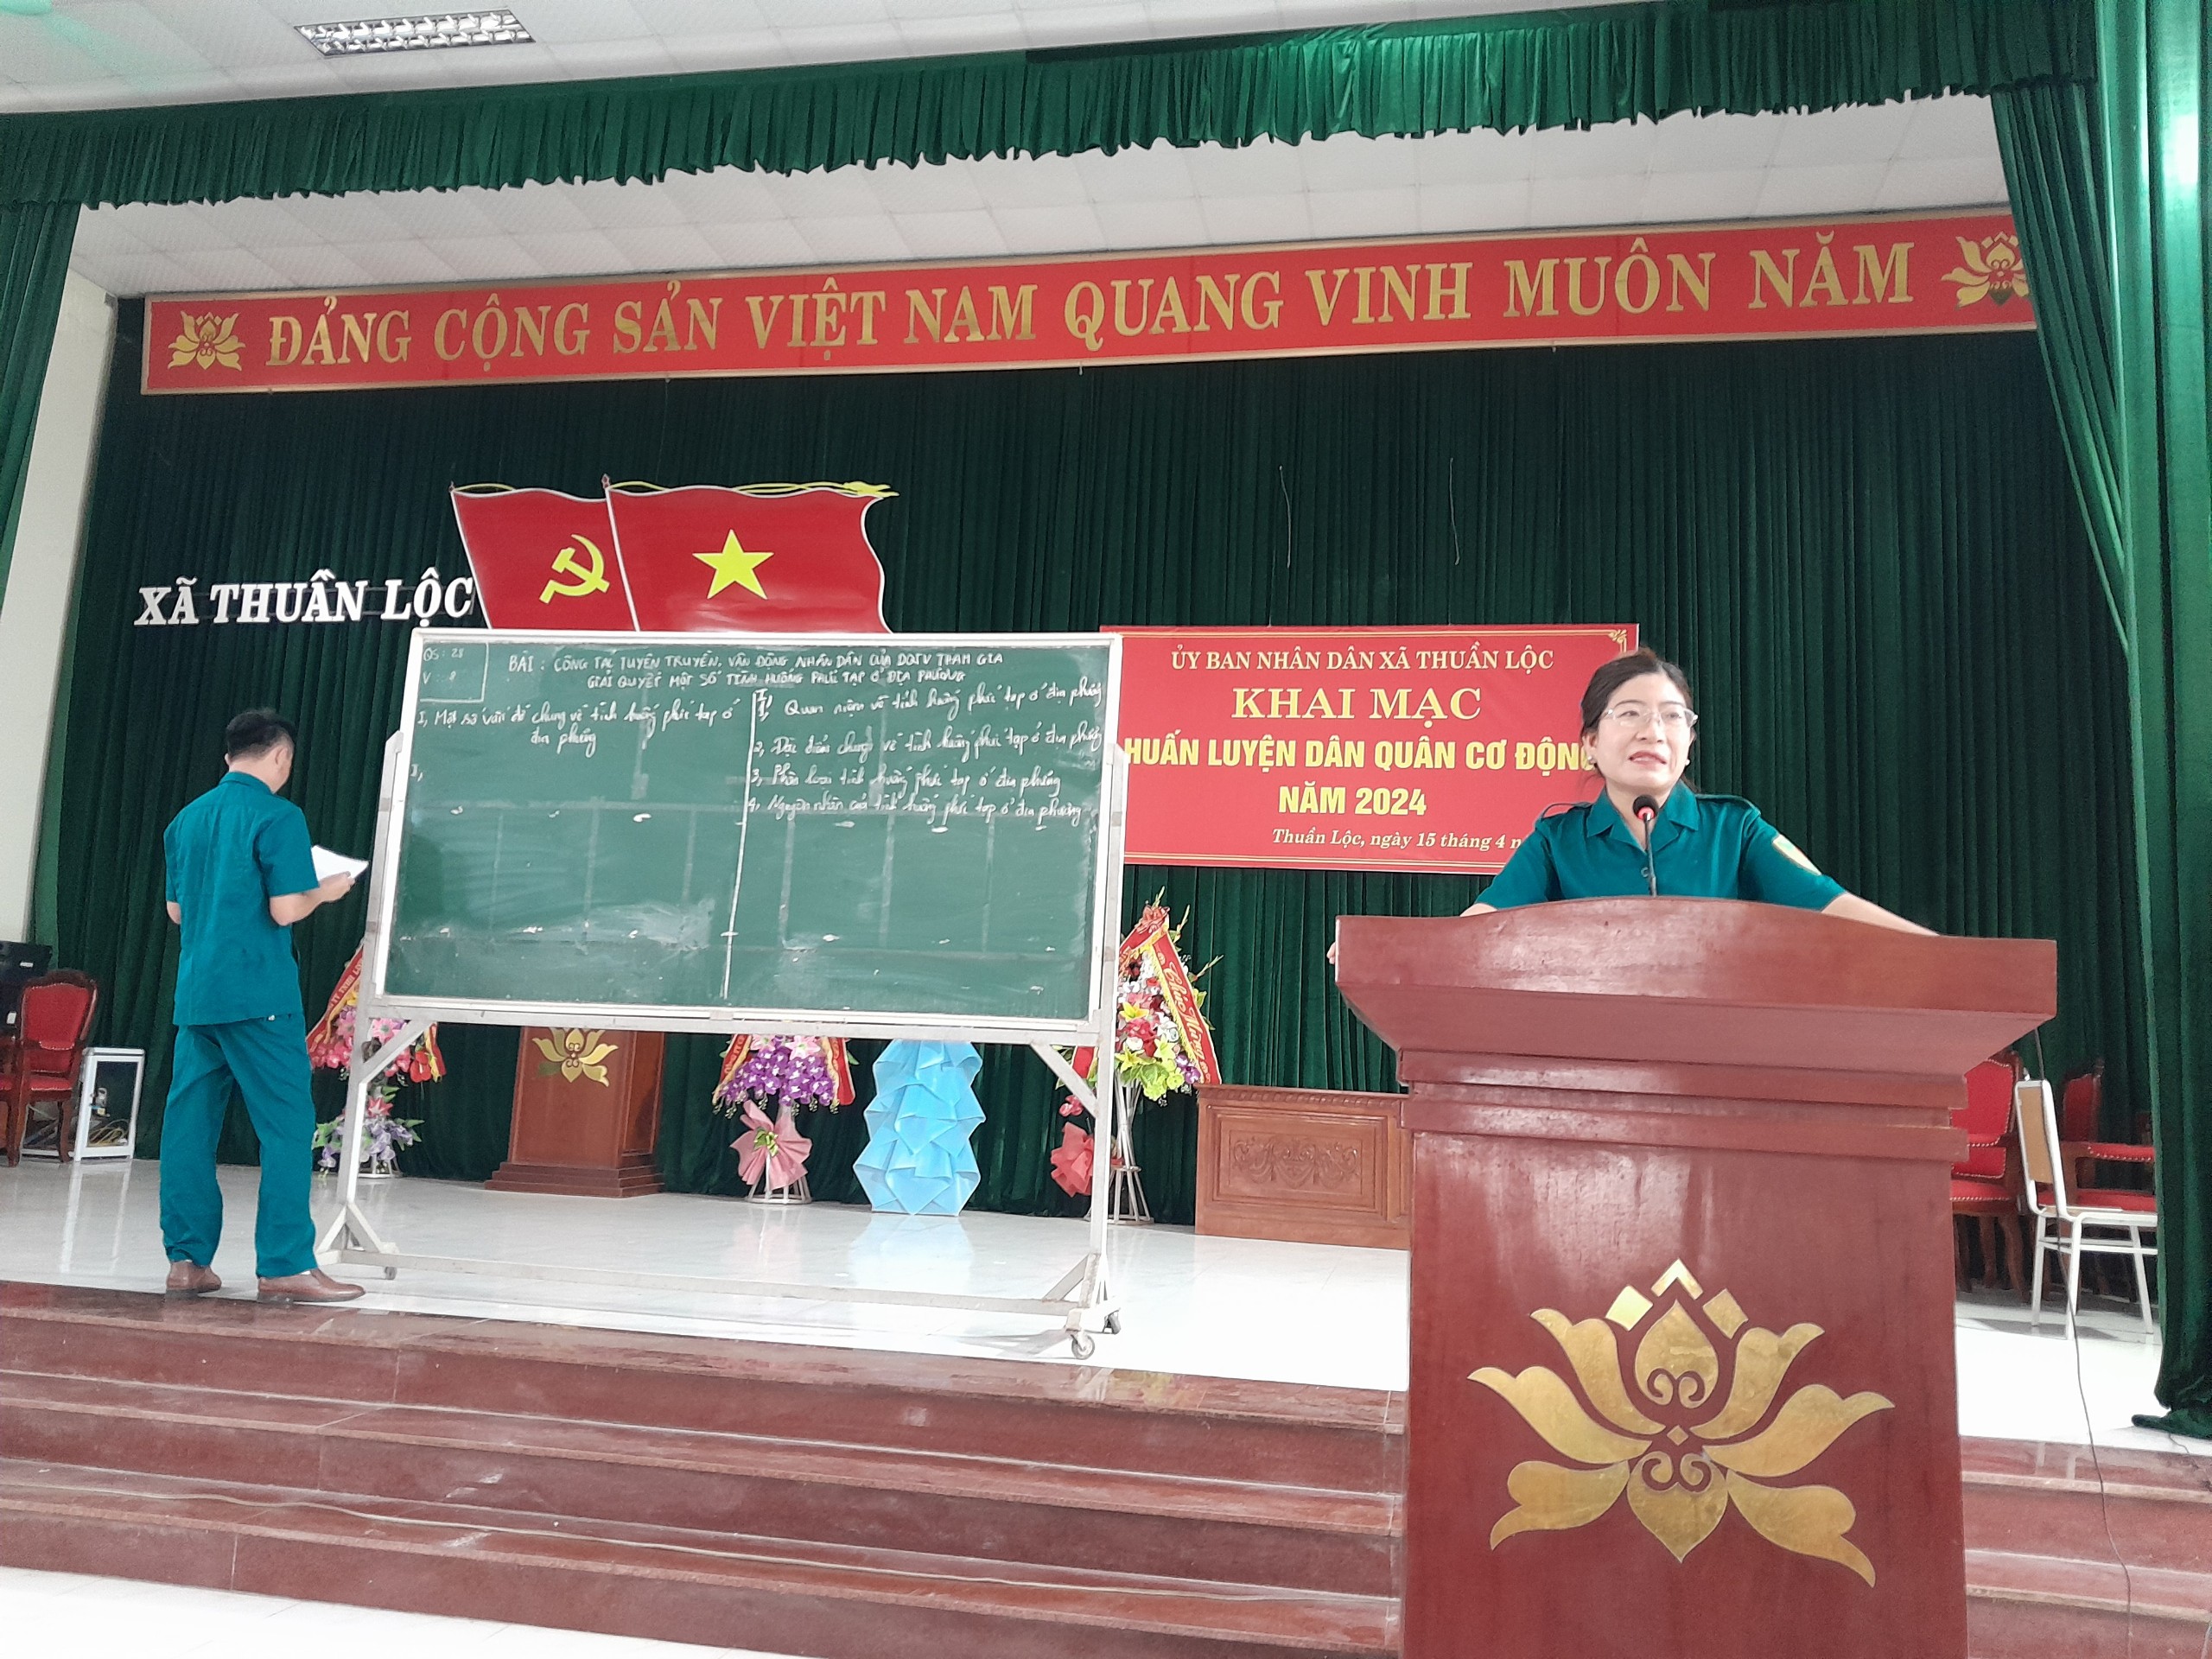 Ủy ban nhân dân xã Thuần Lộc khai mạc huấn luyện dân quân cơ động năm 2024